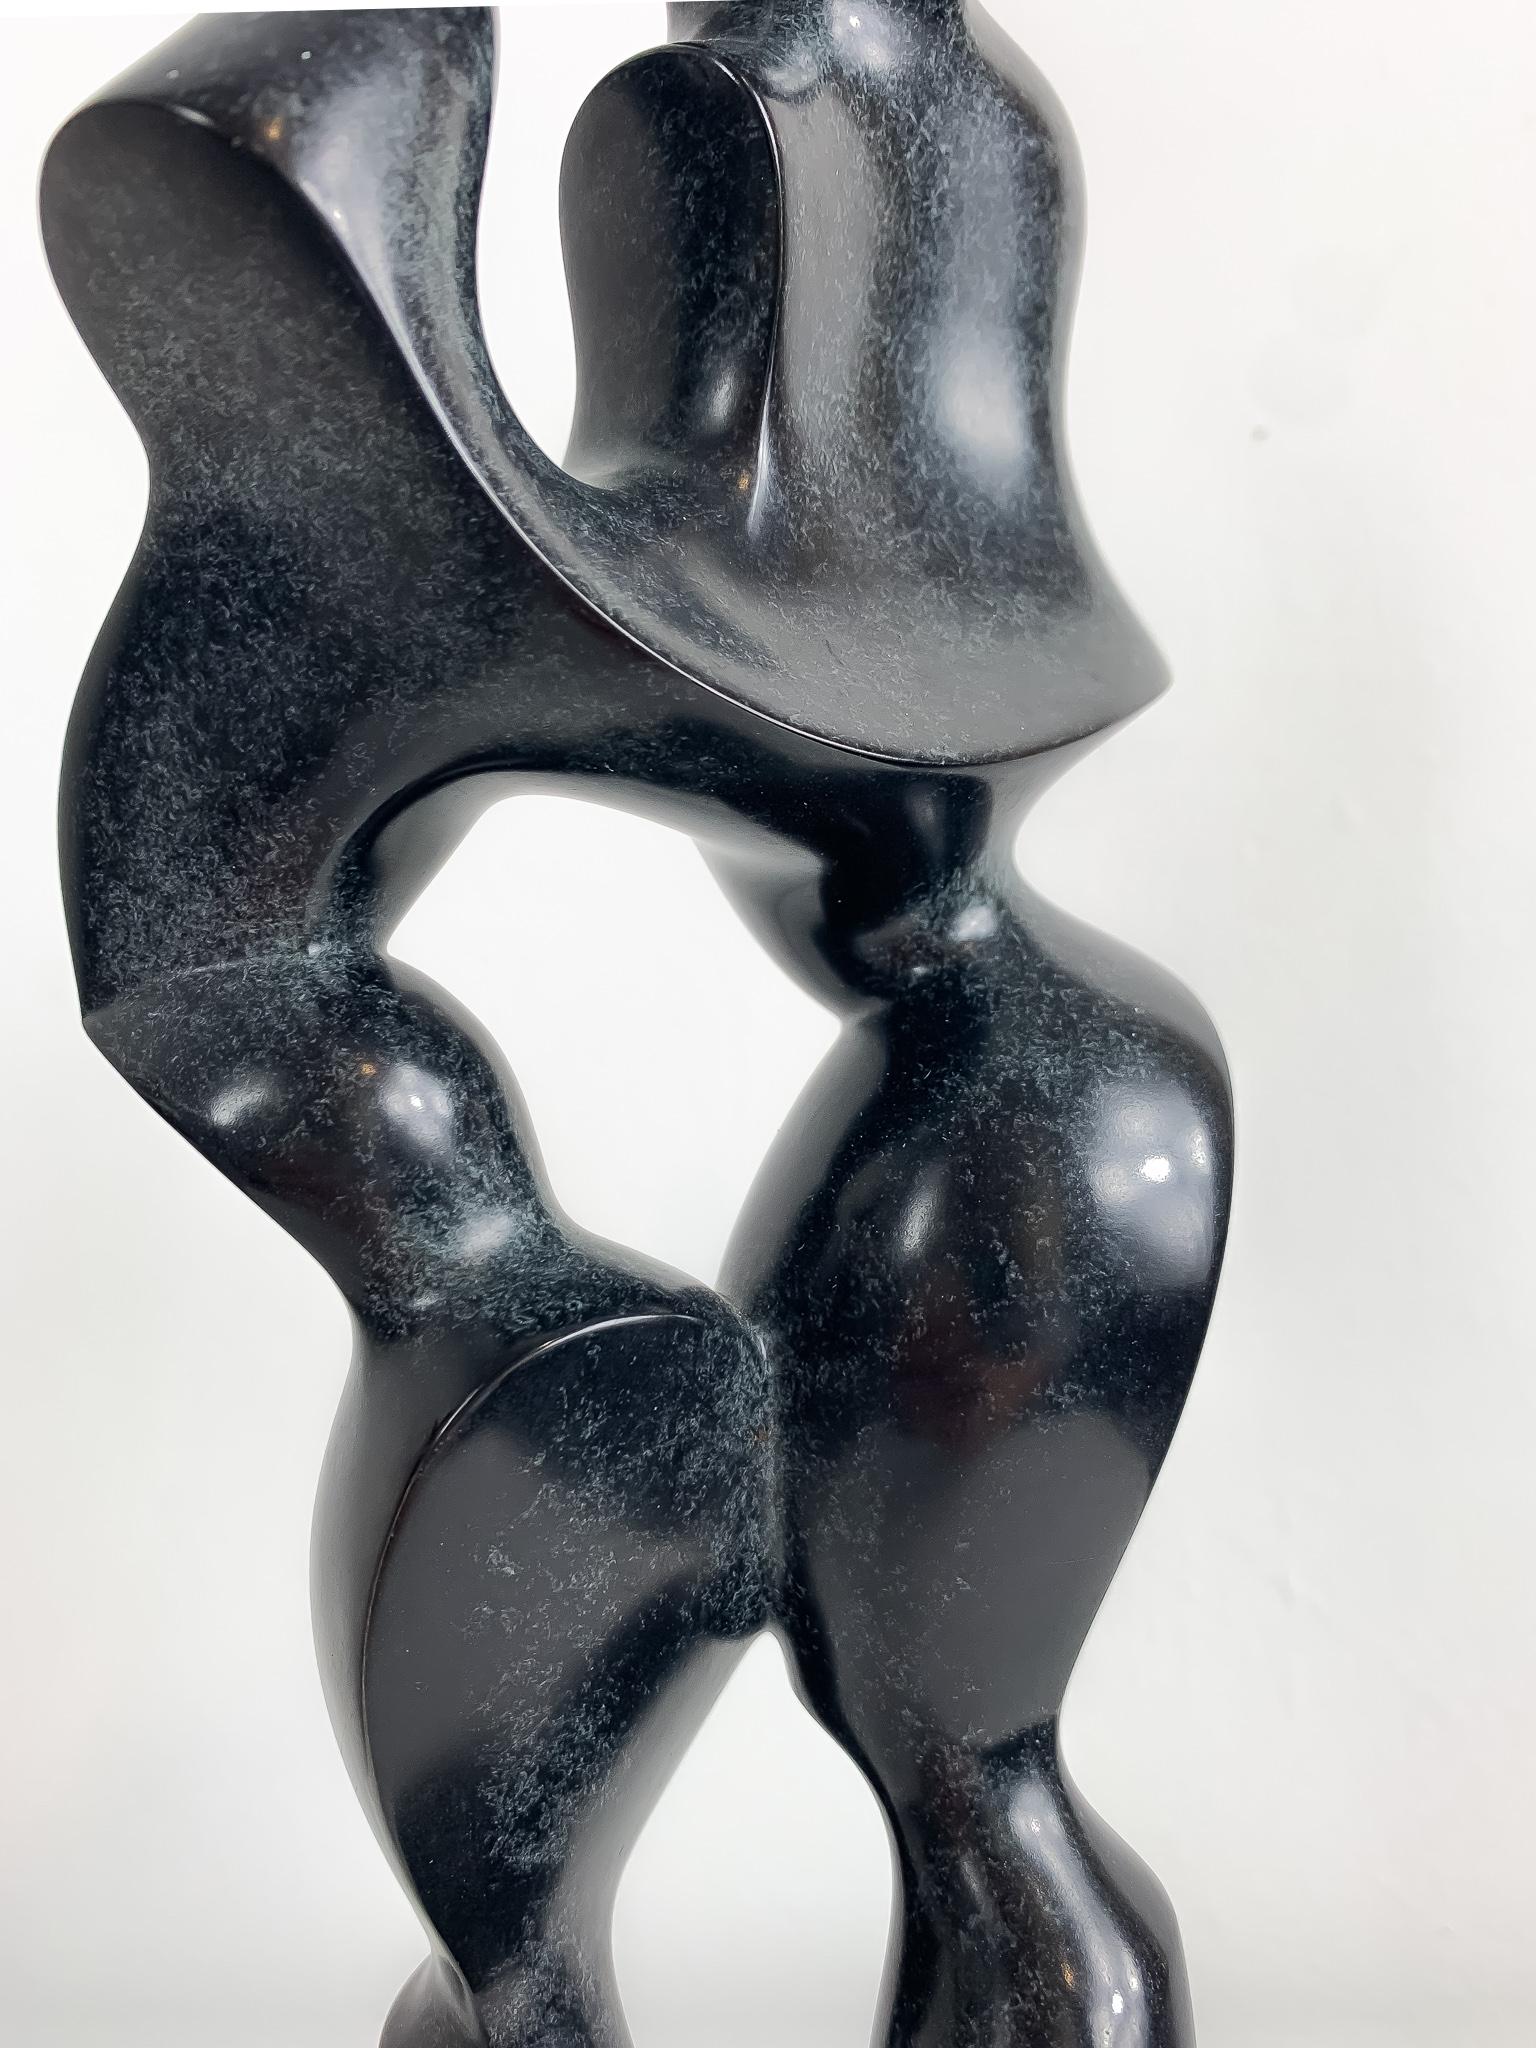 Médium : Bronze patiné monté sur une base en marbre.
Edition : 1/8

Jim Ritchie (1929-2017), né à Montréal, au Canada, est connu pour ses dessins au pastel et ses sculptures en bronze. Son style est lié au cubisme, à la figuration abstraite et au